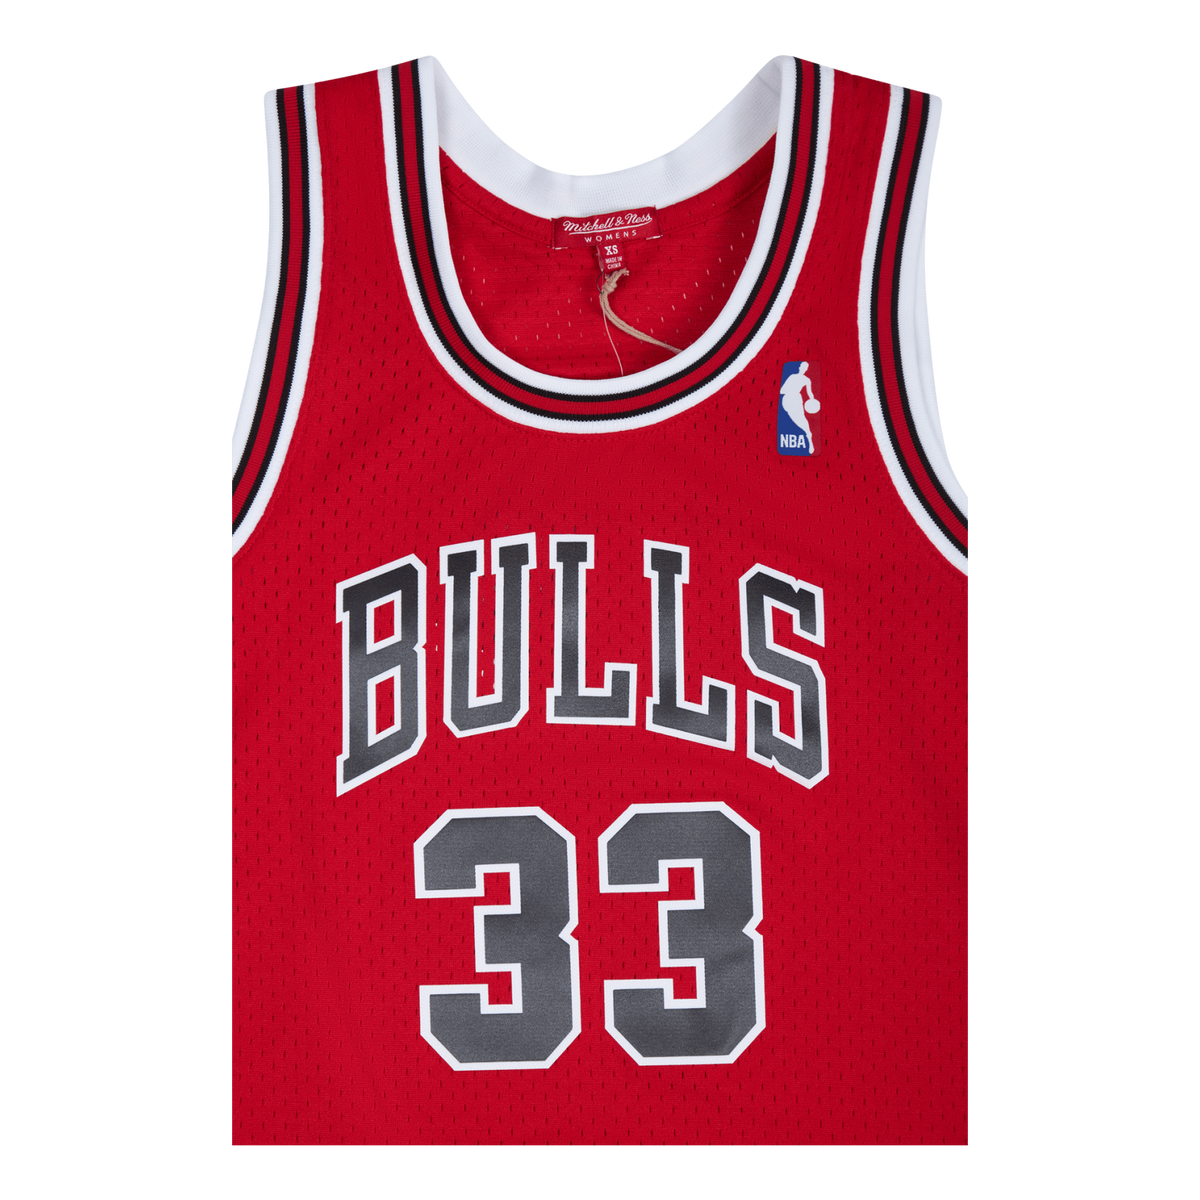 Women's Bulls Swingman Jersey - Pippen